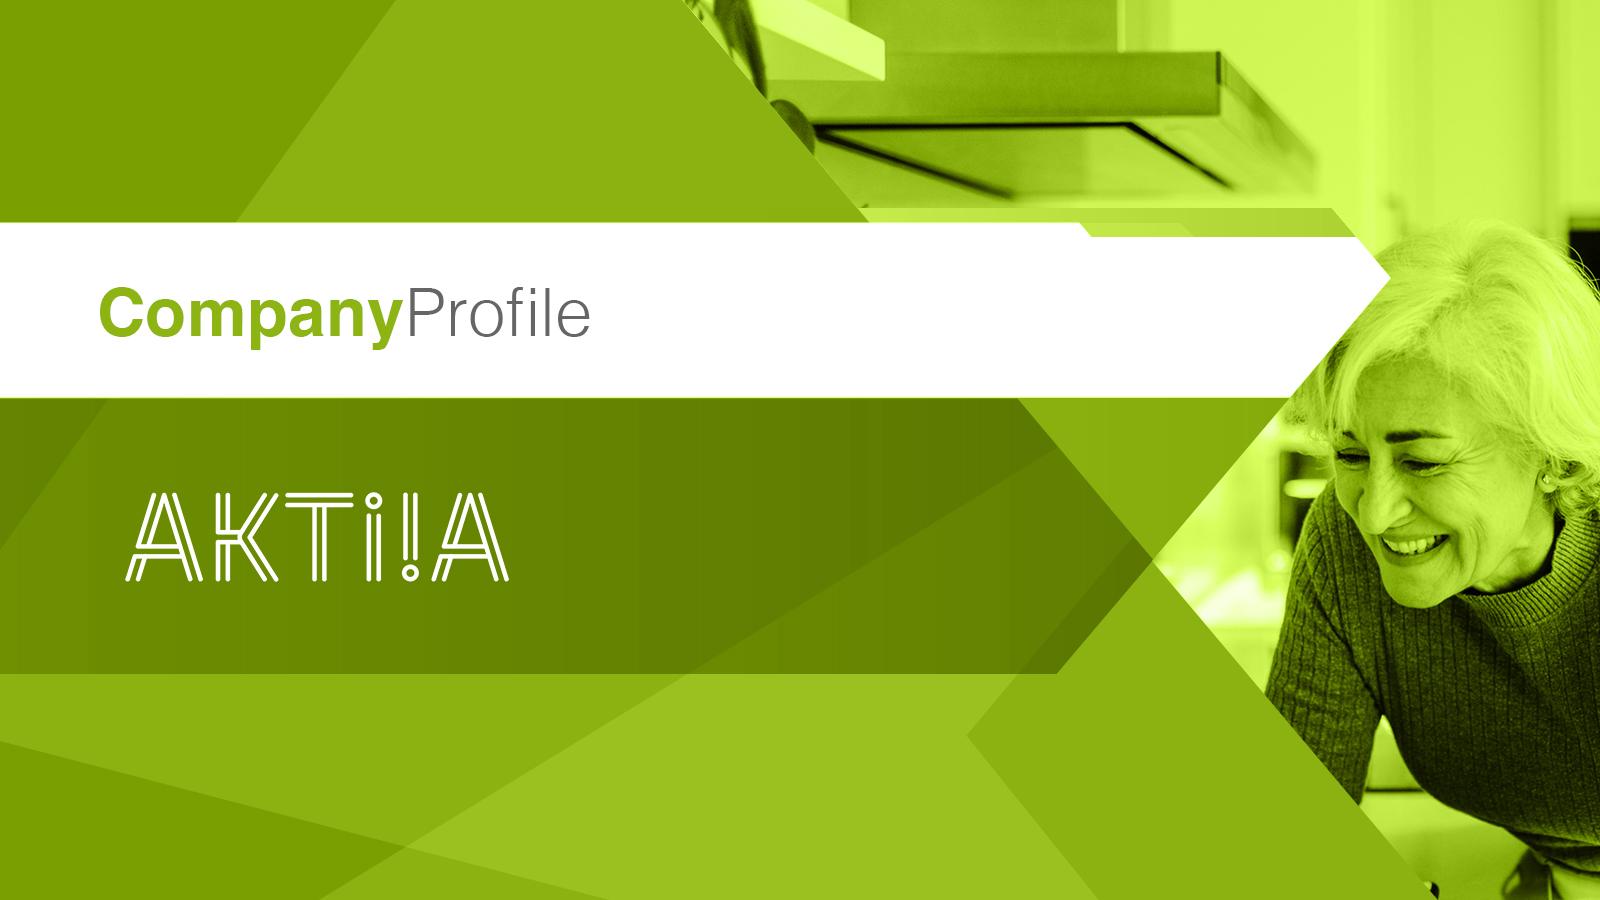 Aktiia company profile